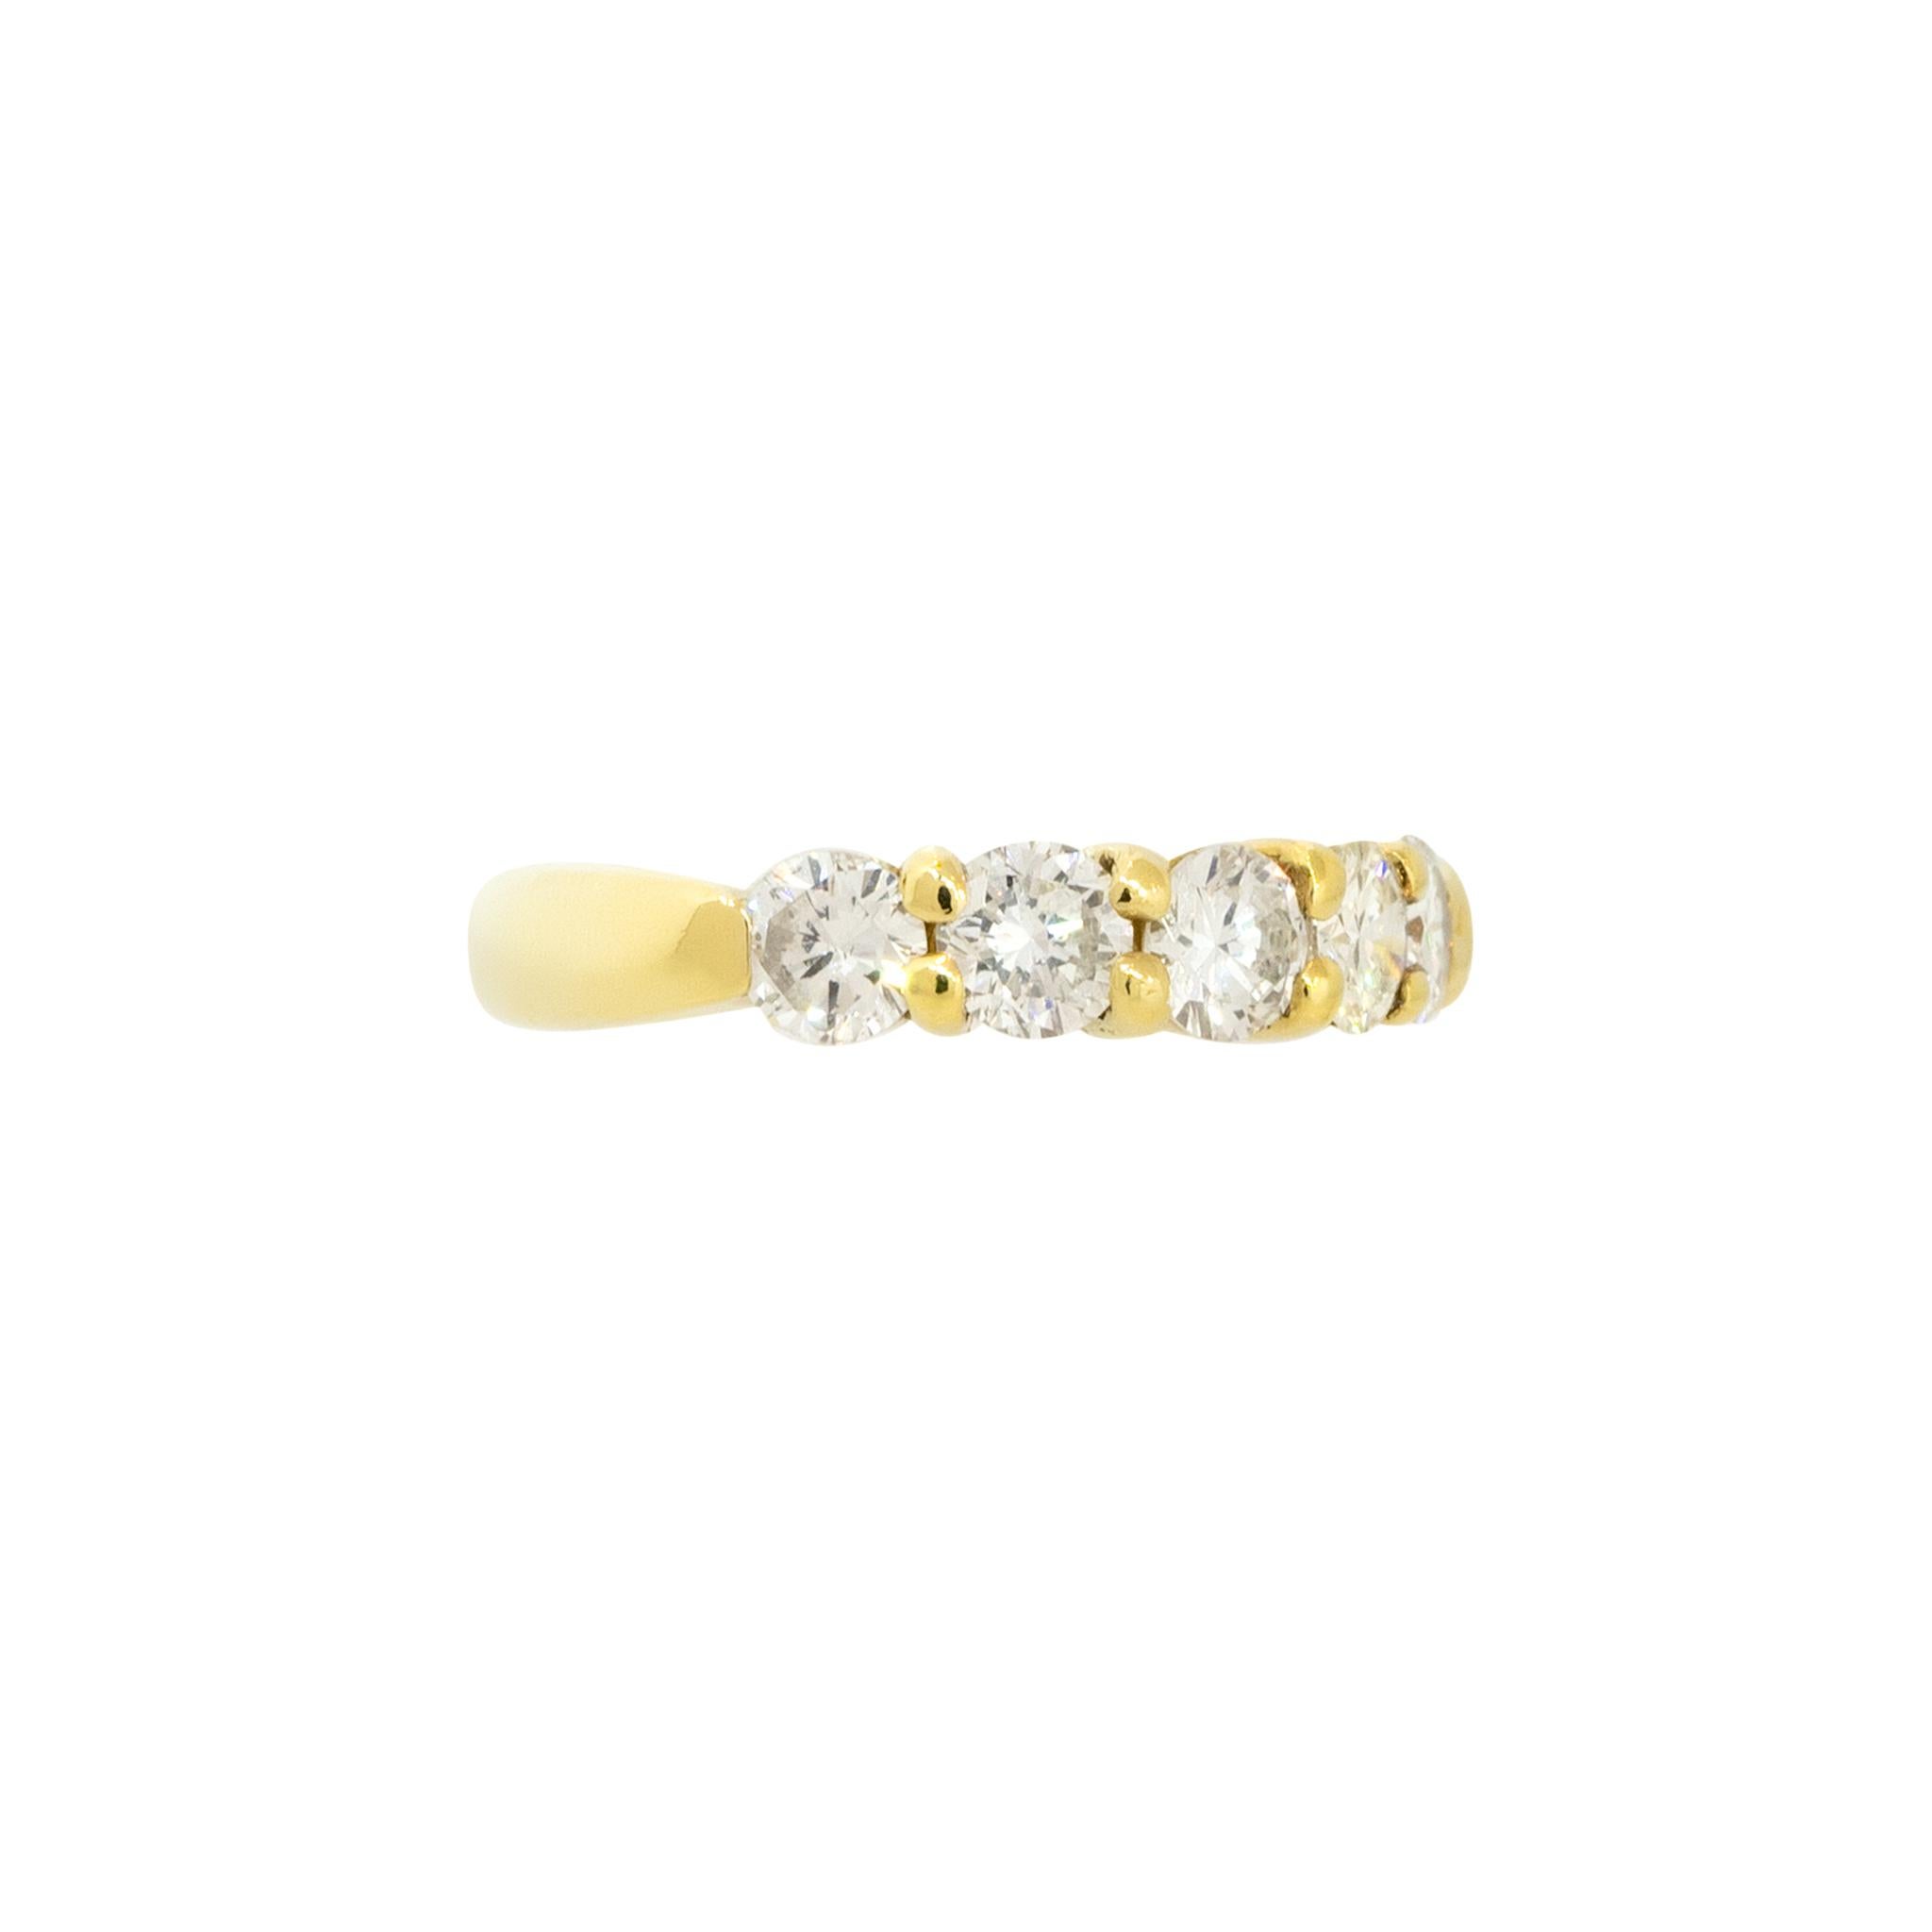 18k Gelbgold 1.10ctw 5 Diamant-Brautband Ring

Raymond Lee Jewelers in Boca Raton - Südfloridas Anlaufstelle für Diamanten, feinen Schmuck, antiken Schmuck, Nachlassgegenstände und Vintage-Schmuck.

Stil: Frauen 5 Diamant-Brautband Ring
MATERIAL: